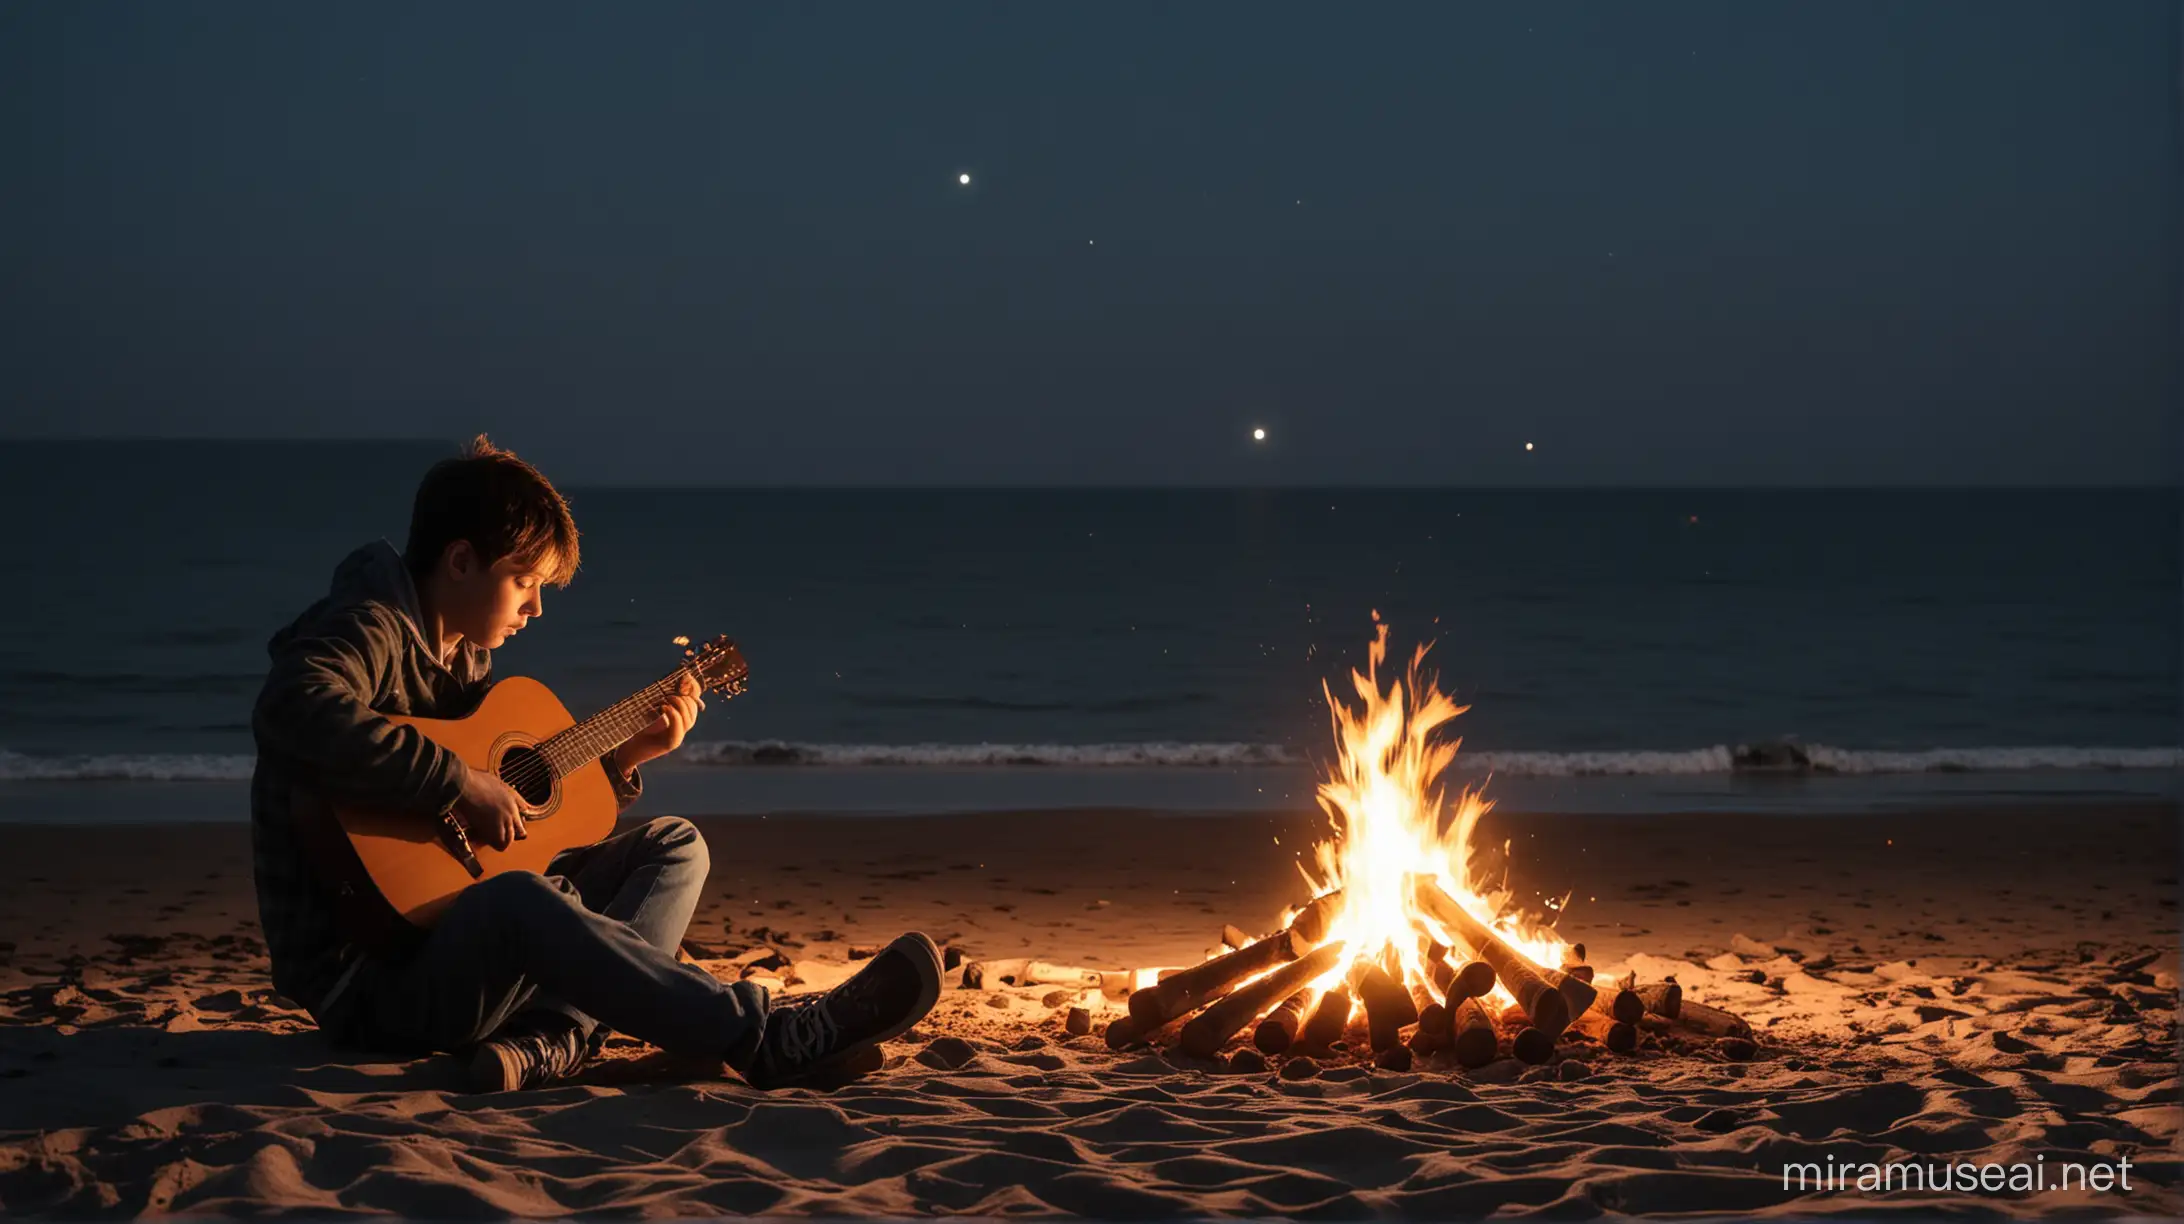 Melancholic Youth Serenading the Seashore Bonfire at Night